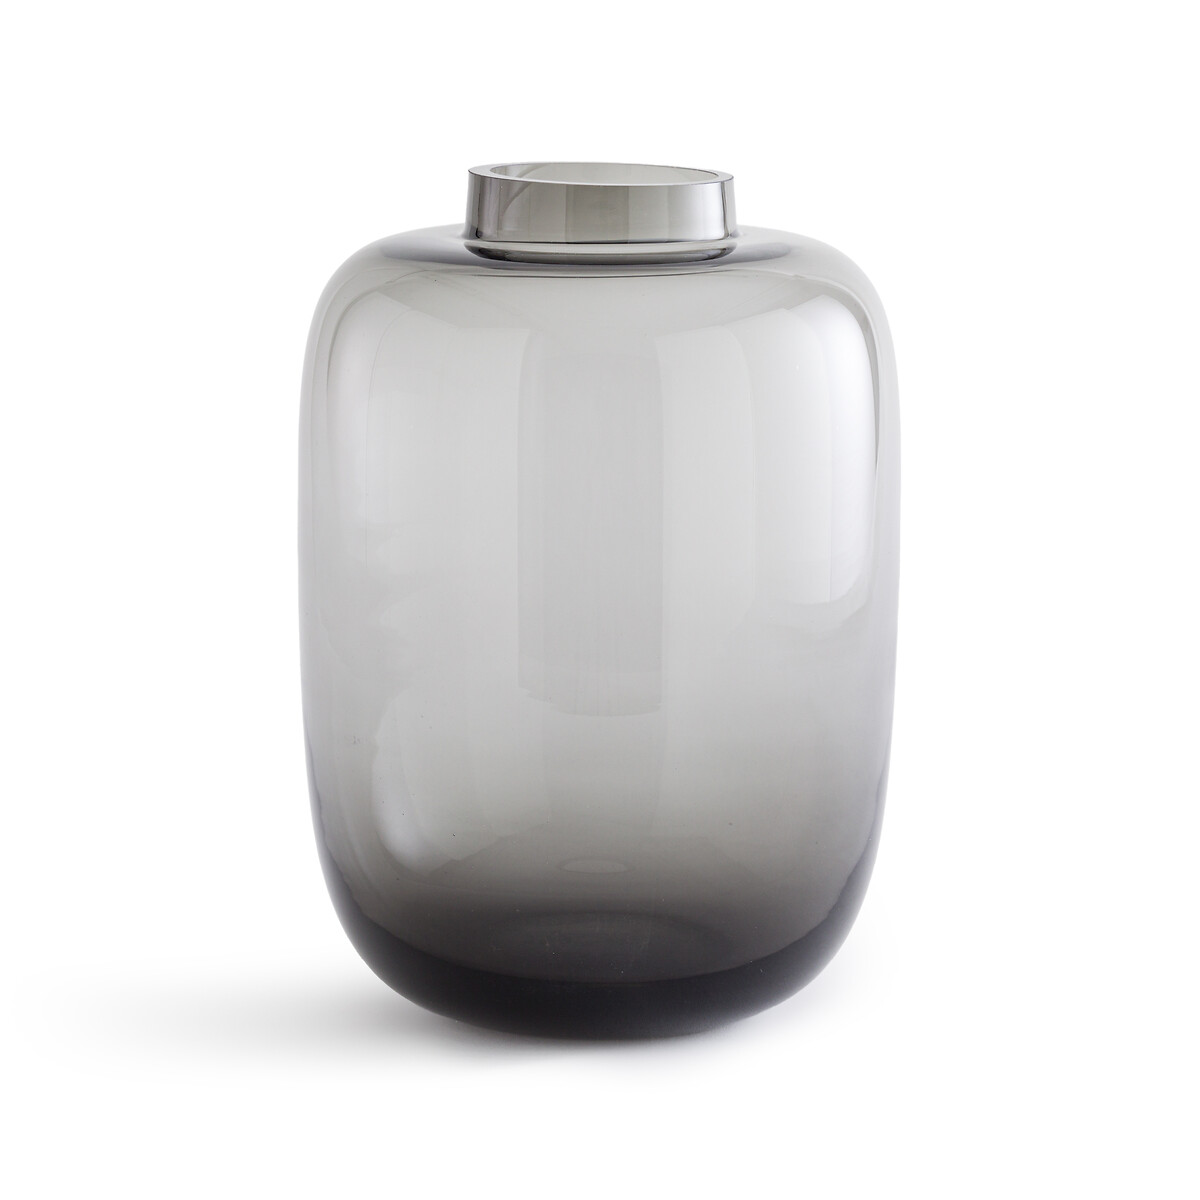 Ваза из цветного стекла Agata единый размер серый ваза волшебная ночь стекло цвет черный 29 см